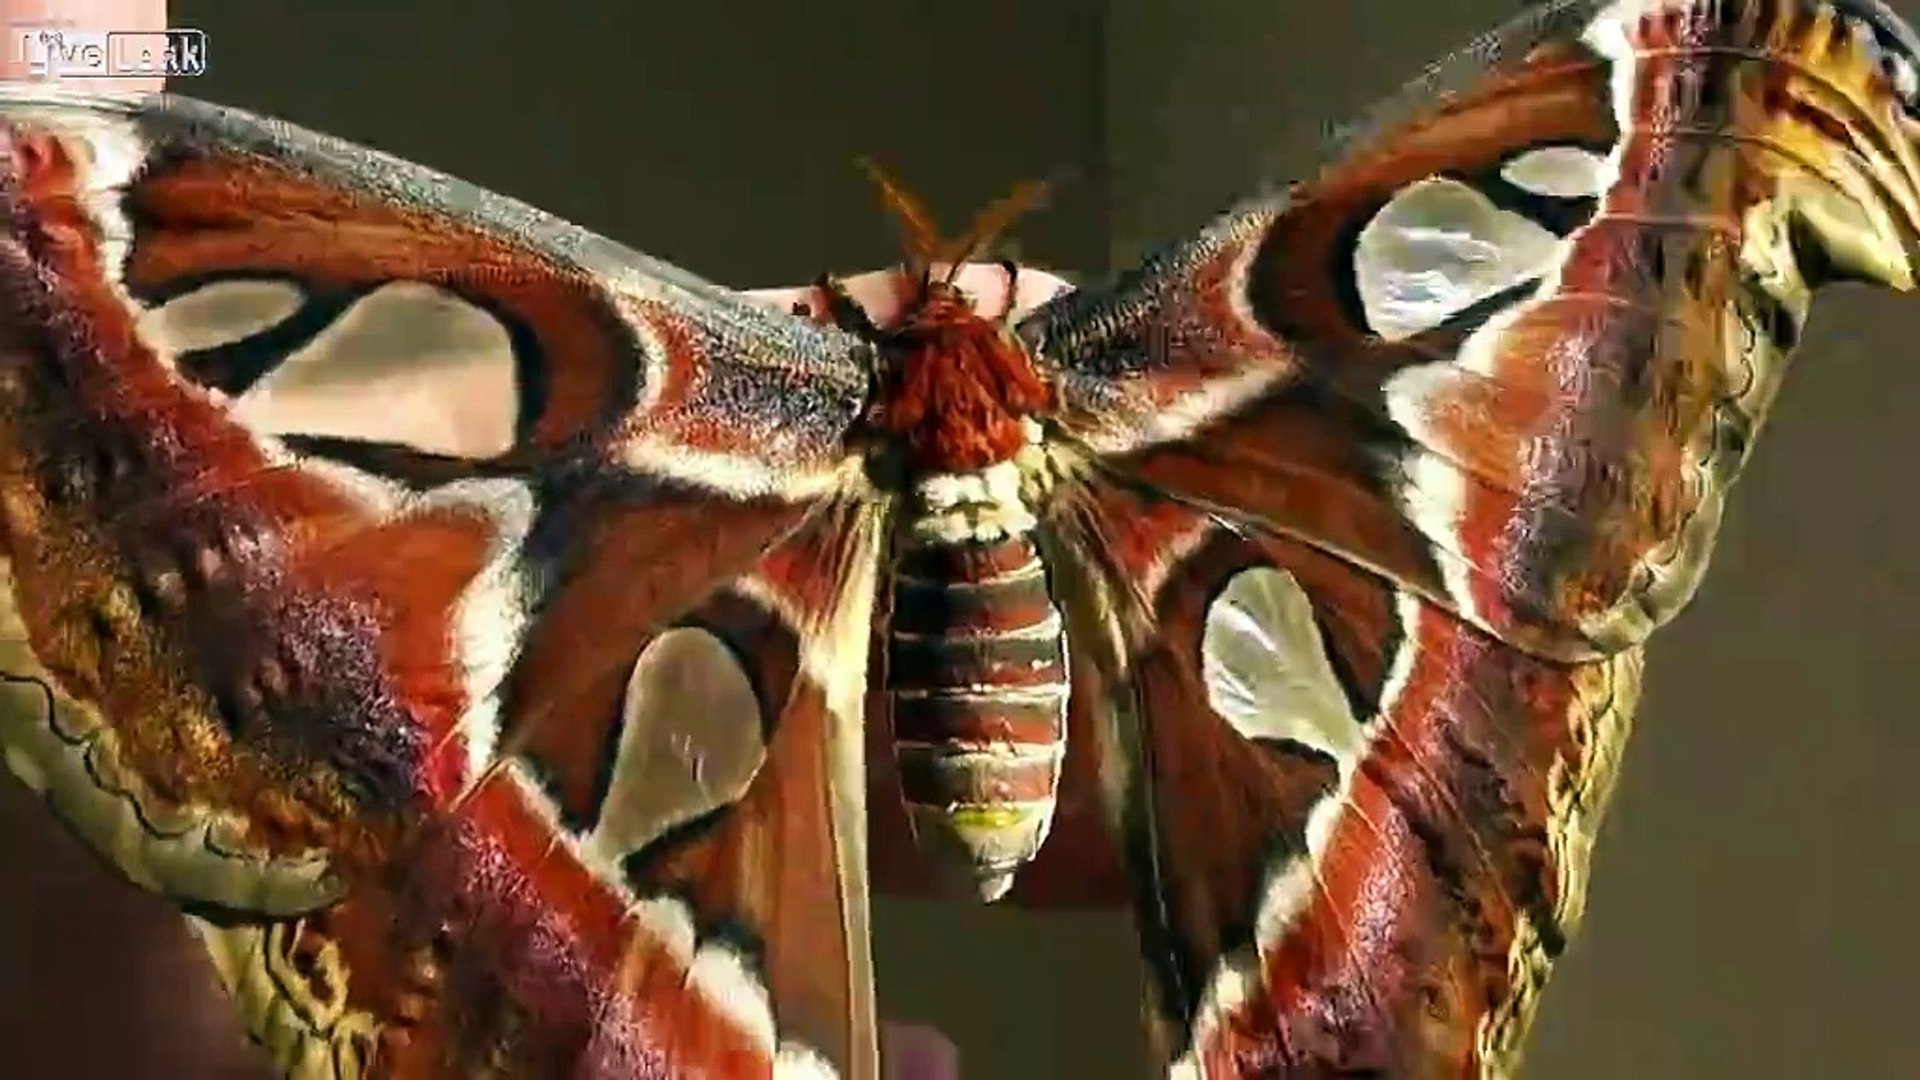 Giant Atlas Moths - The biggest moths in the world.